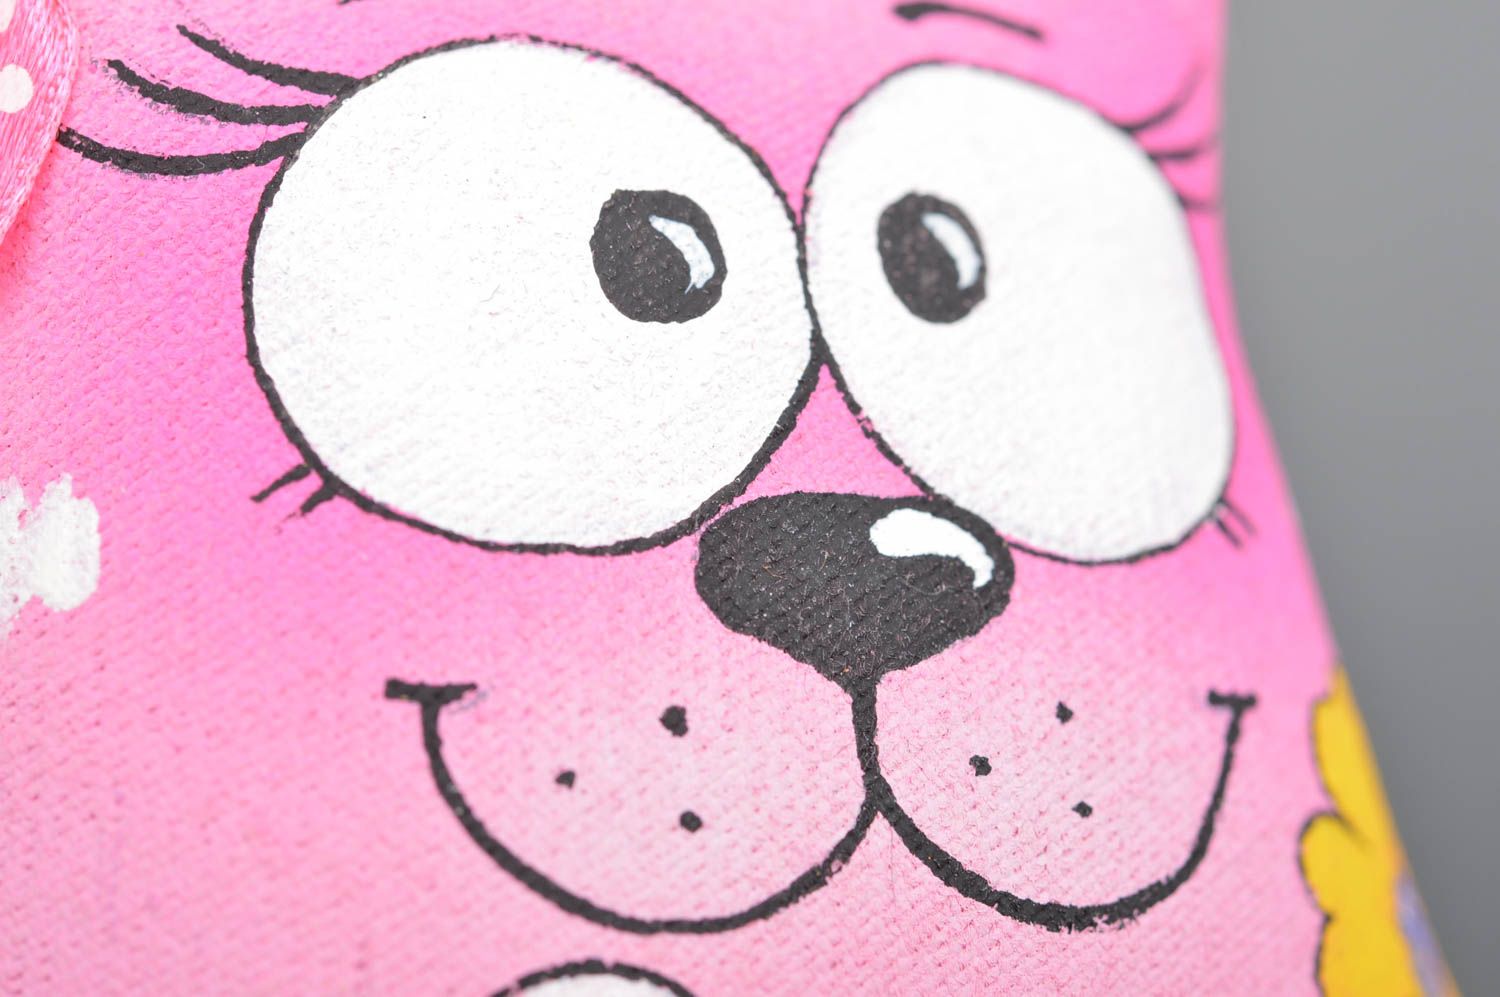 Jouet mou chat rose en tissu de coton peint de couleurs acryliques fait main photo 4